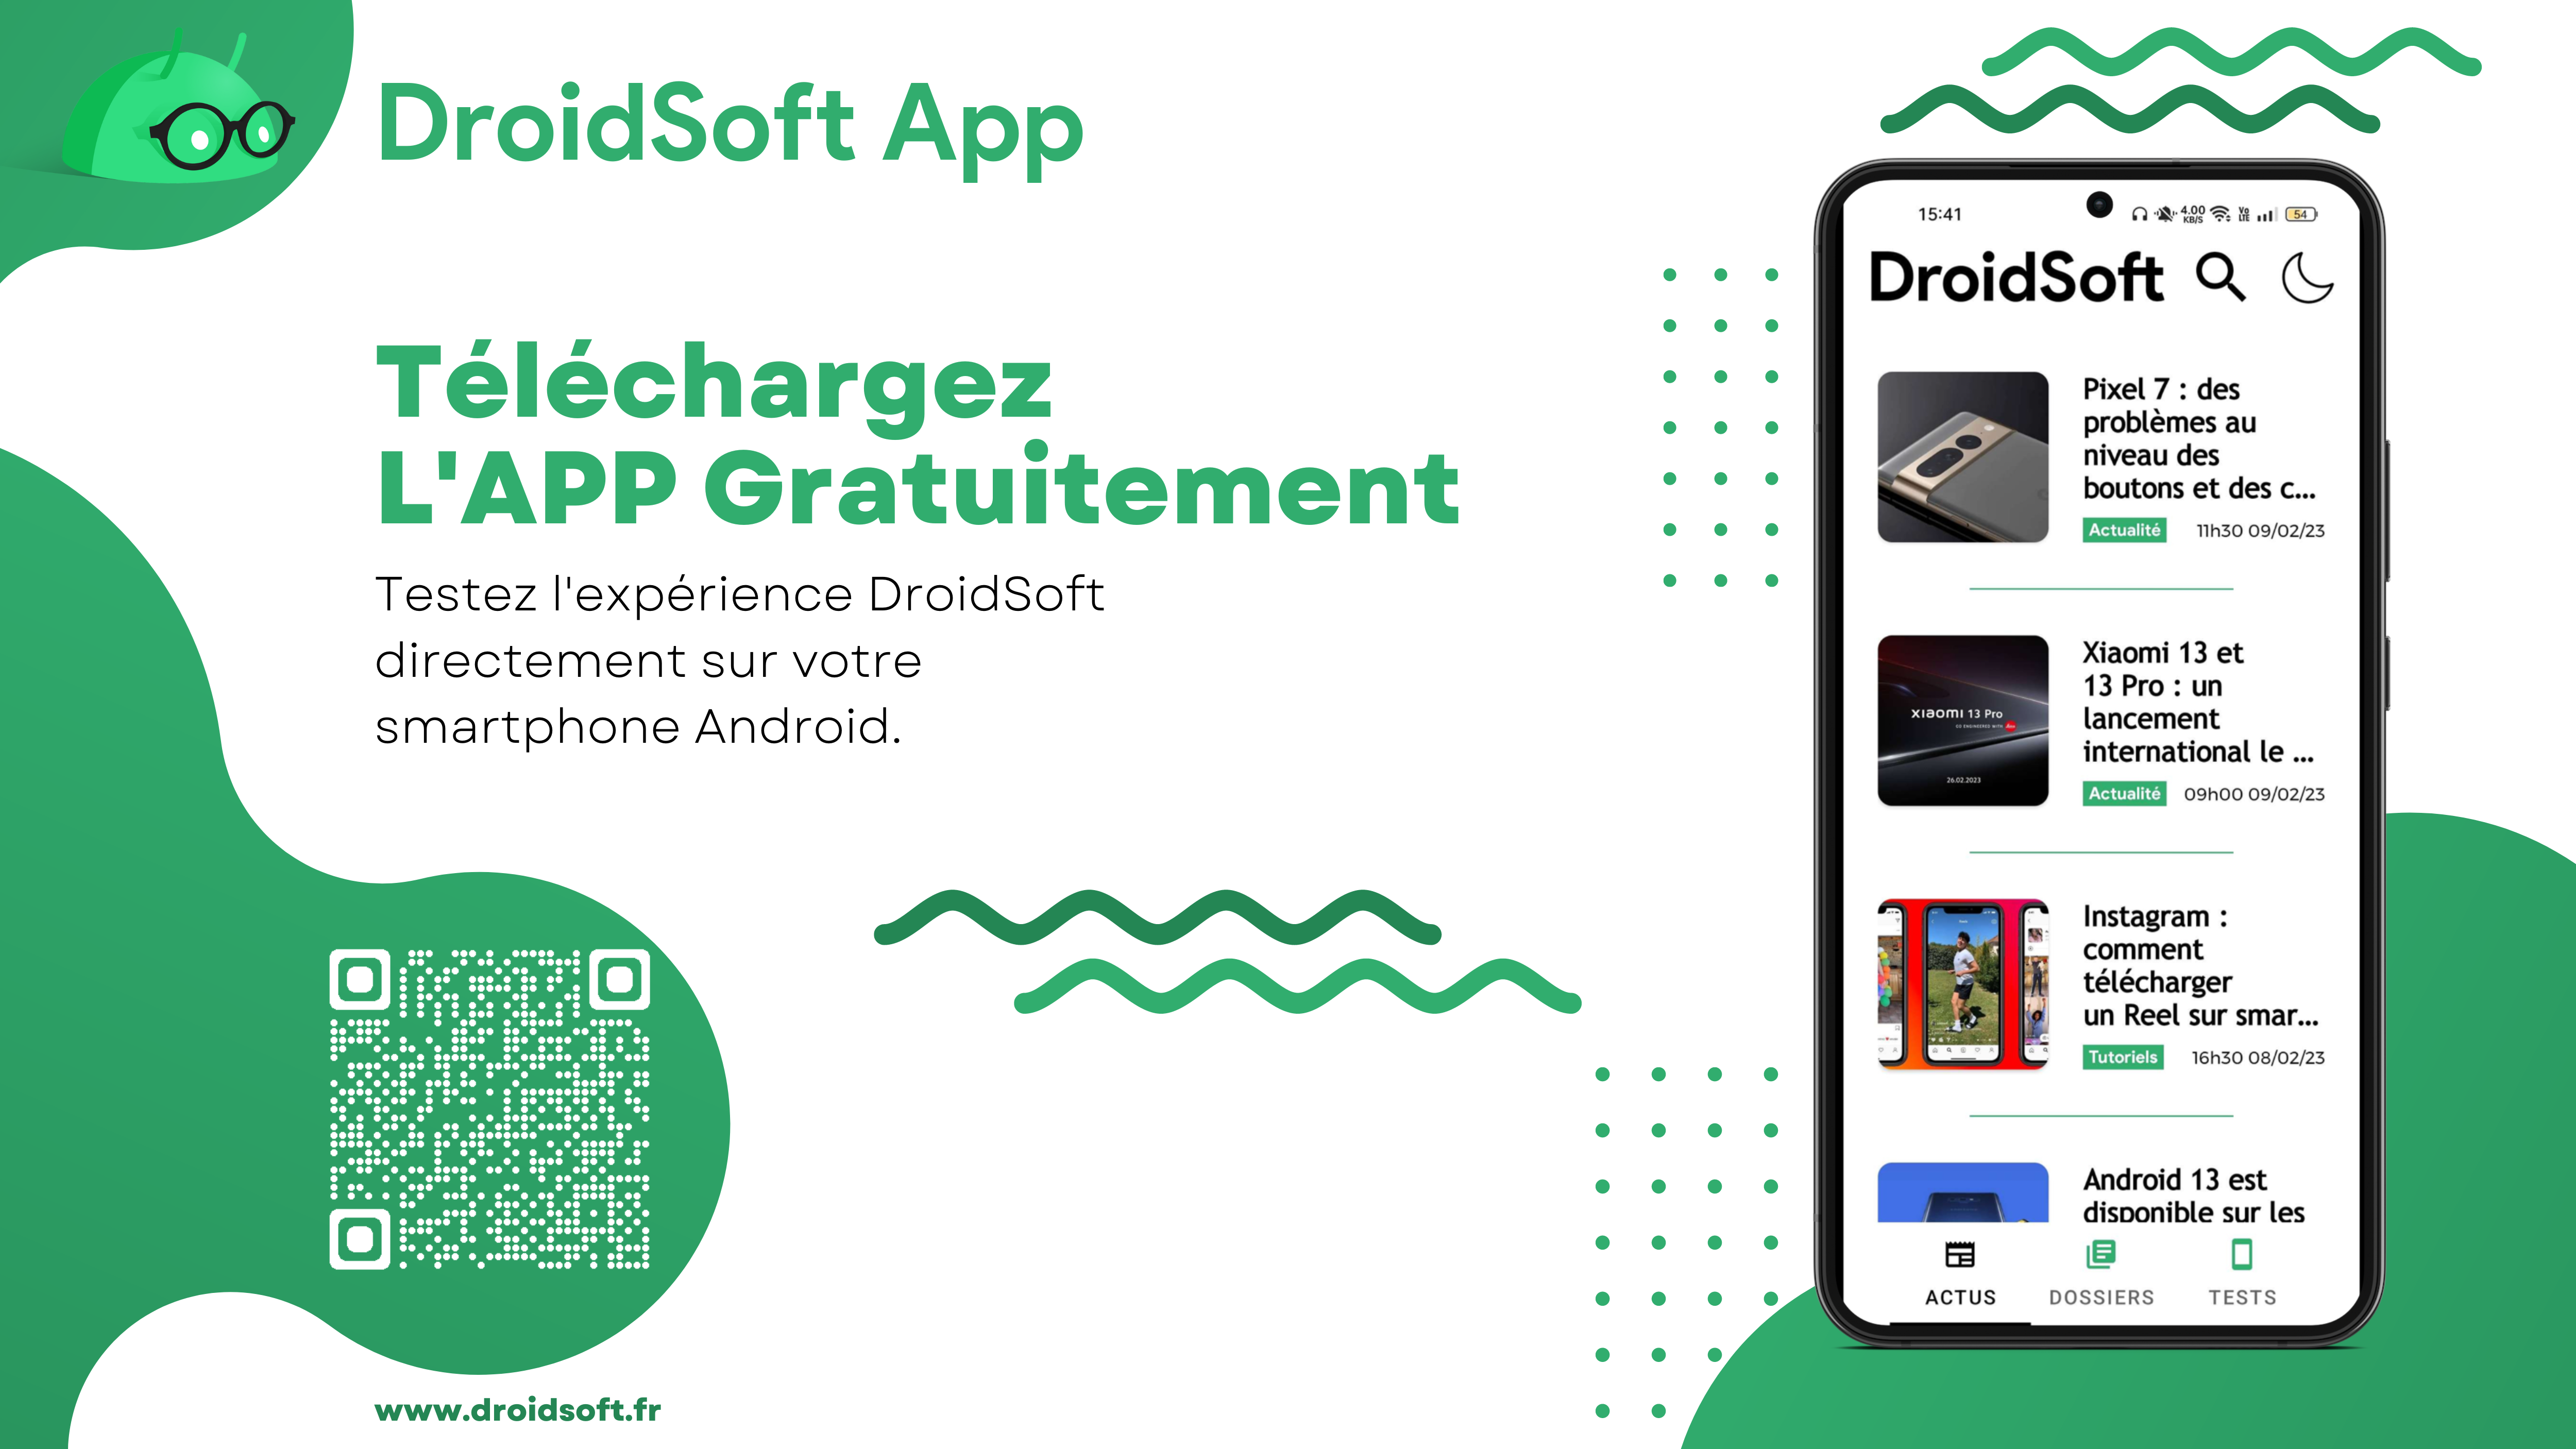 DroidSoft App poster